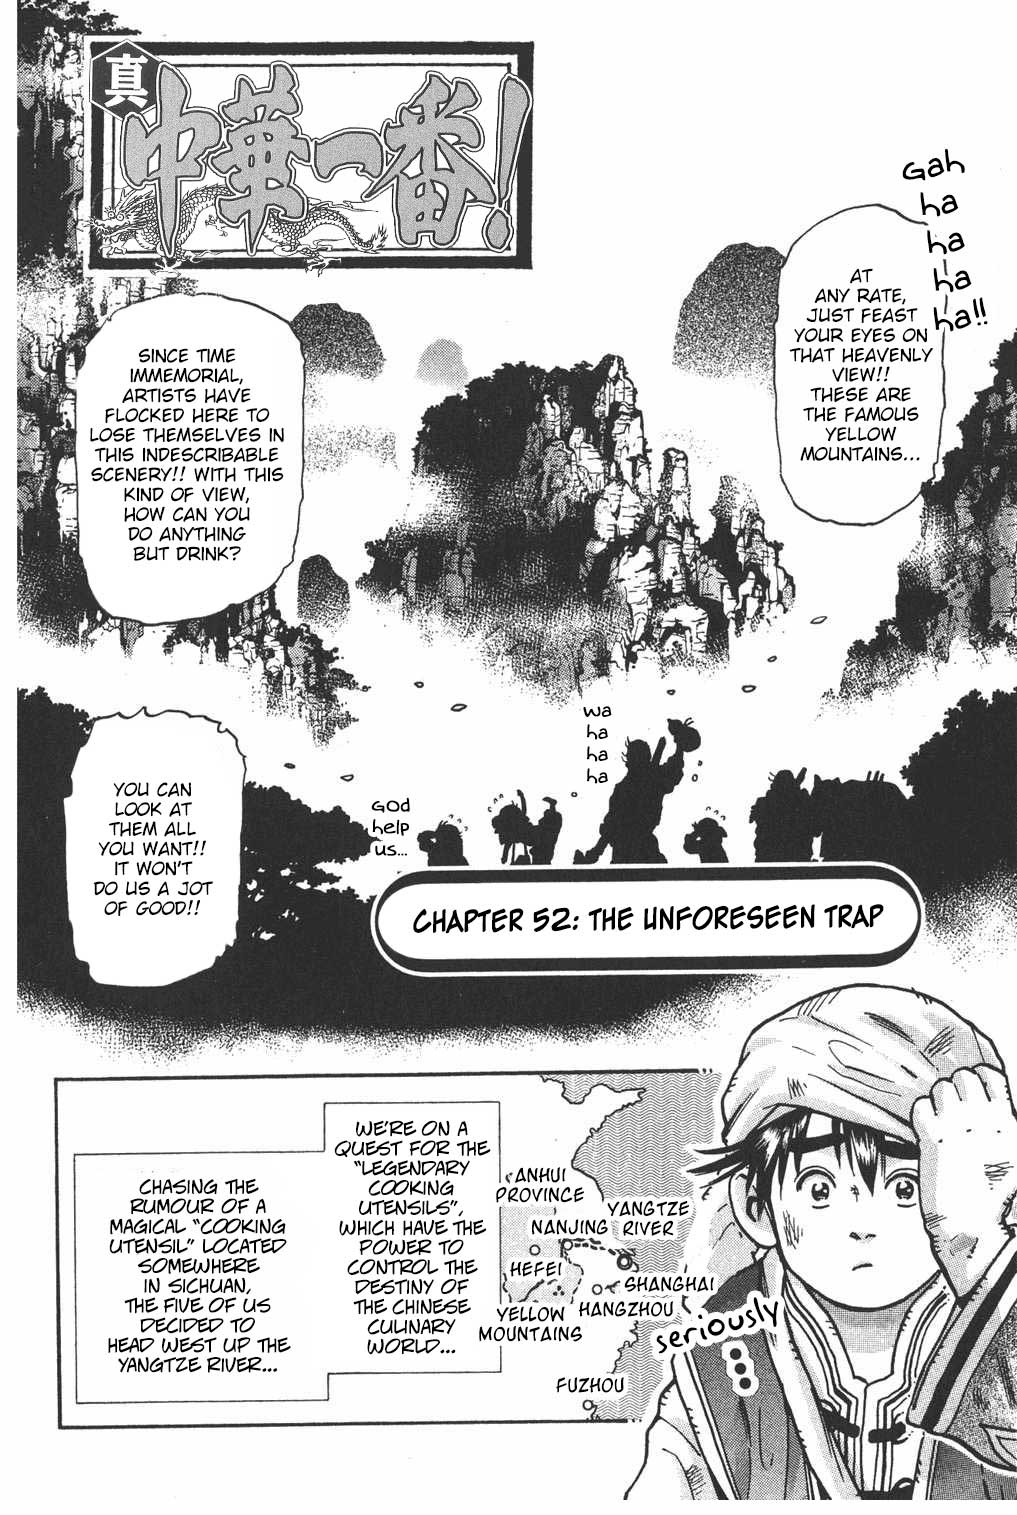 Shin Chuuka Ichiban! Vol. 7 Ch. 52 The Unforeseen Trap